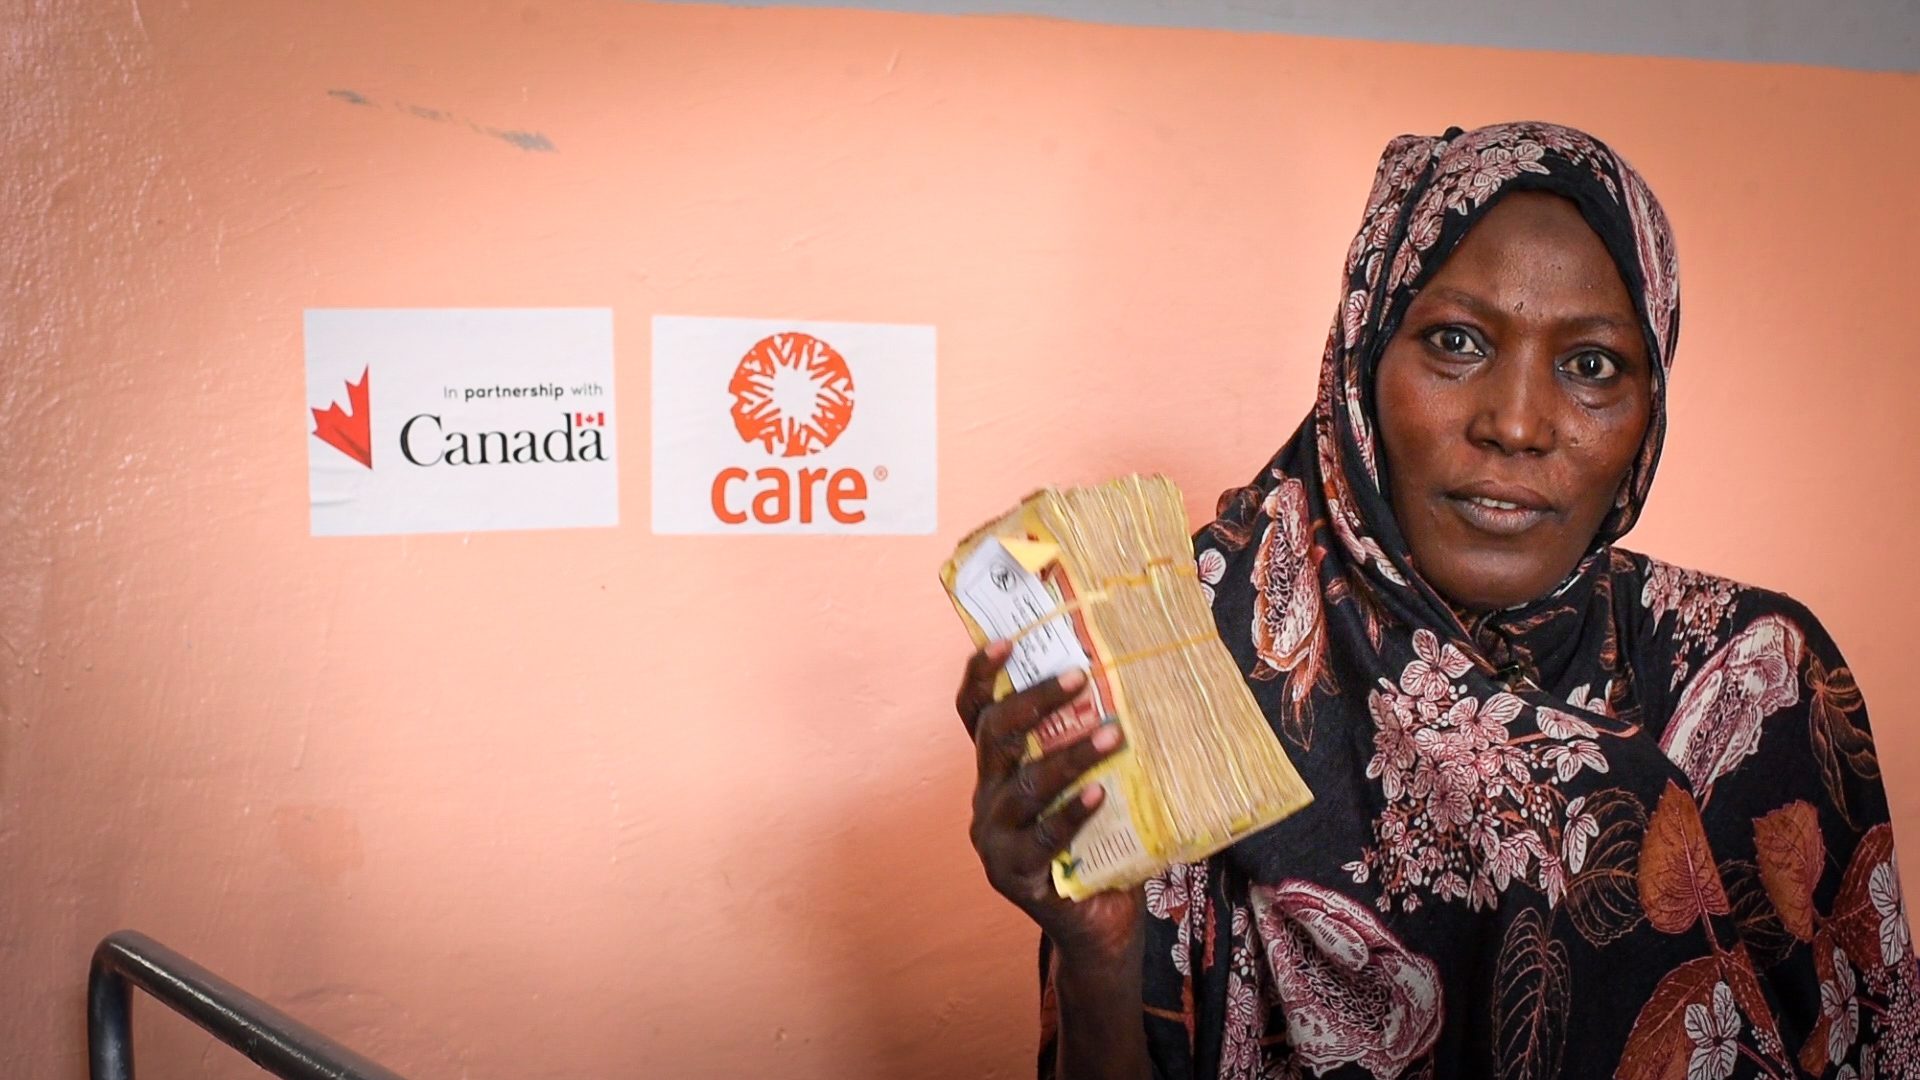 Une femme tient une liasse d’argent dans une main. Elle est devant un mur orange affichant le logo de CARE et celui du gouvernement du Canada.